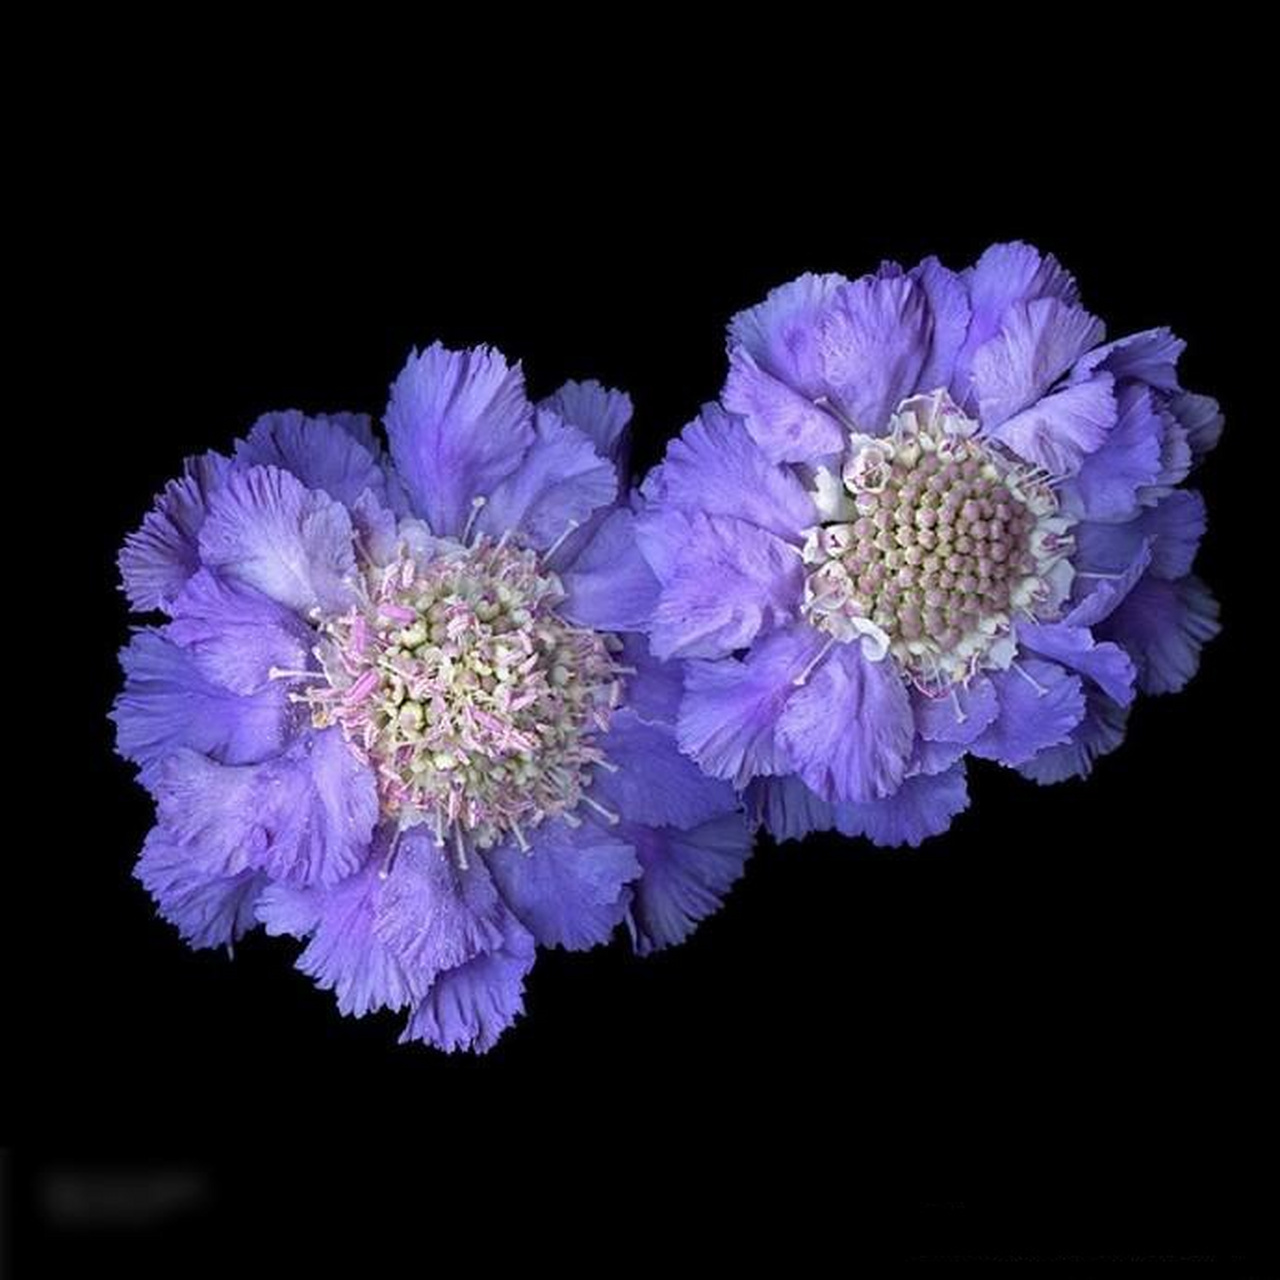 法国花卉摄影获奖作品图片